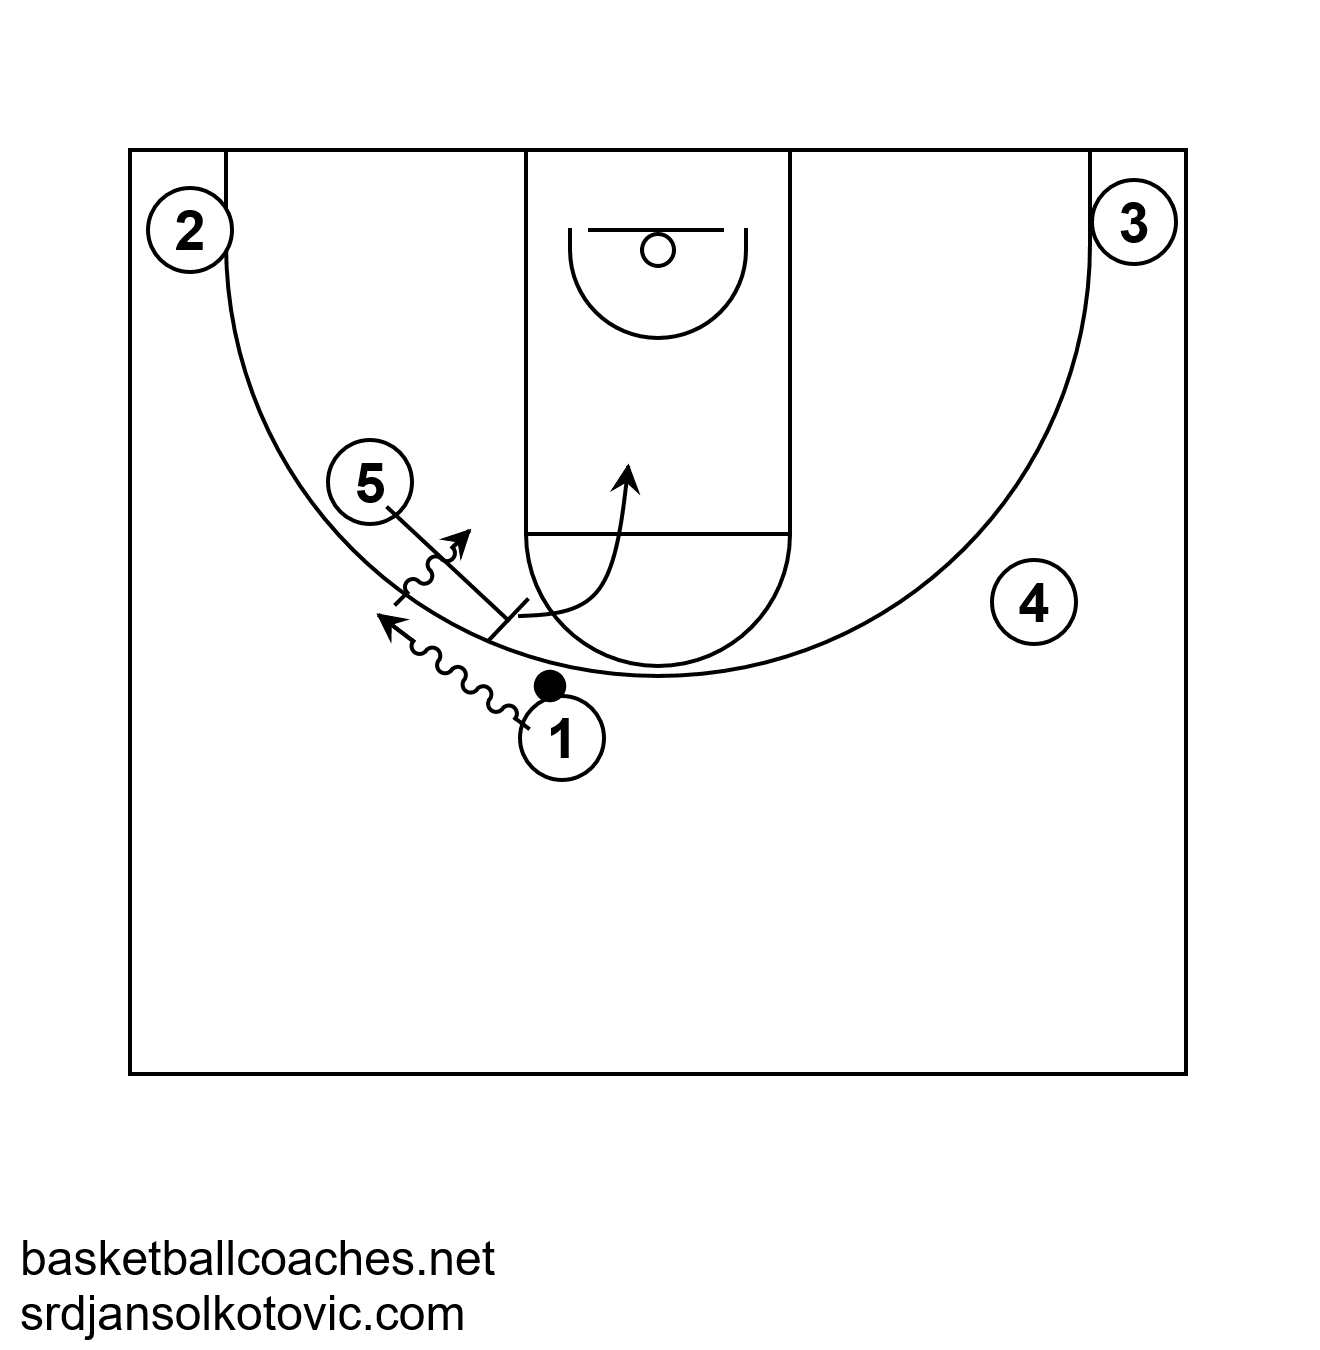 Basketball Dictionary: Angle Pick n Roll